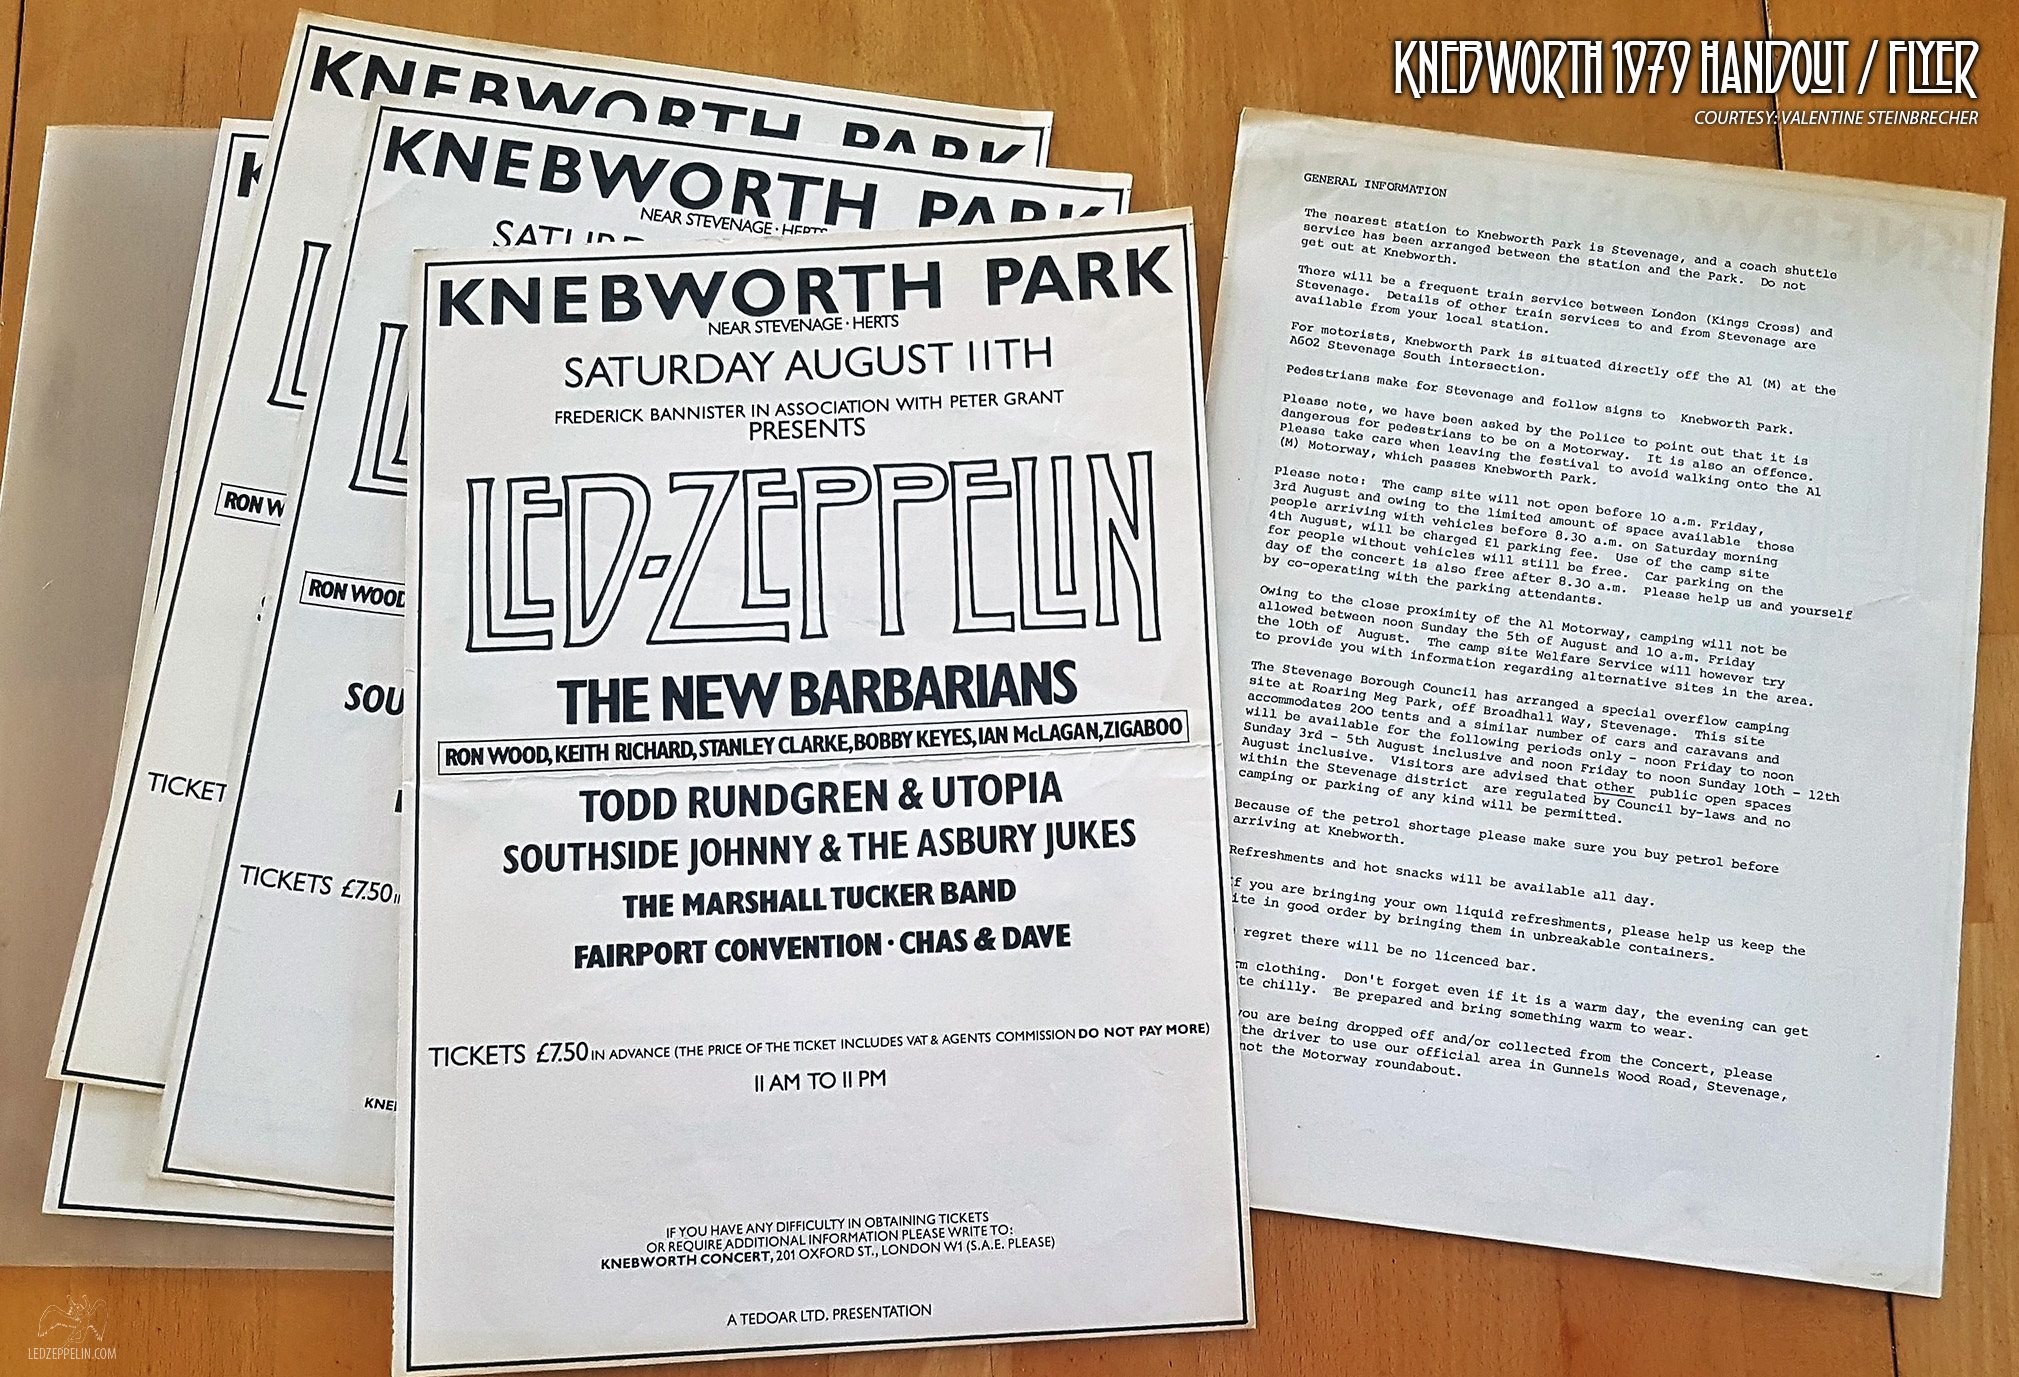 Knebworth 1979 flyer / handout